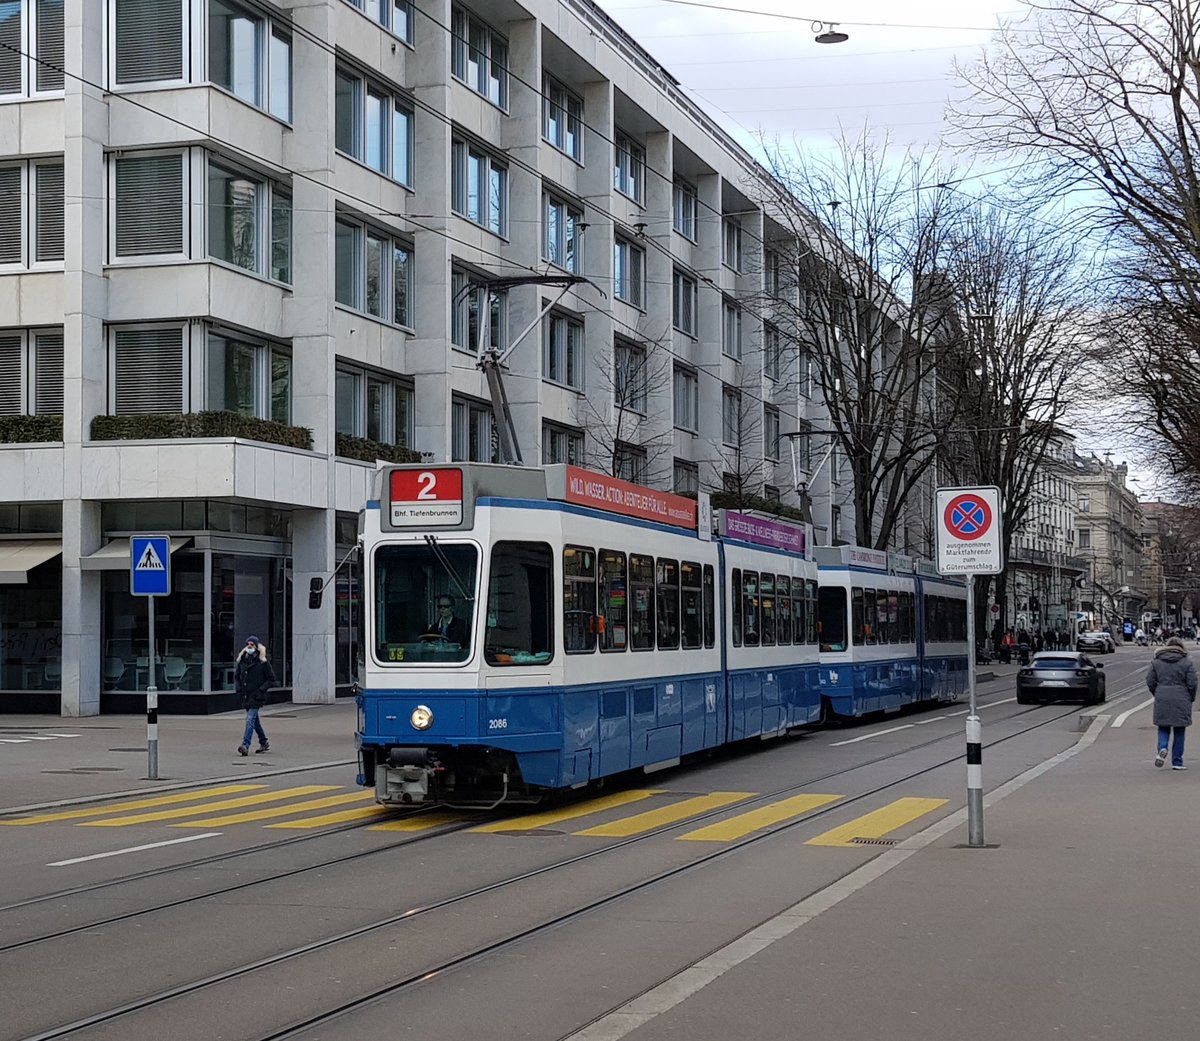 Linie 2 Wagennummer 2086 kurz nach der Haltestelle Kantonalbank. Datum: 20. 3. 2021